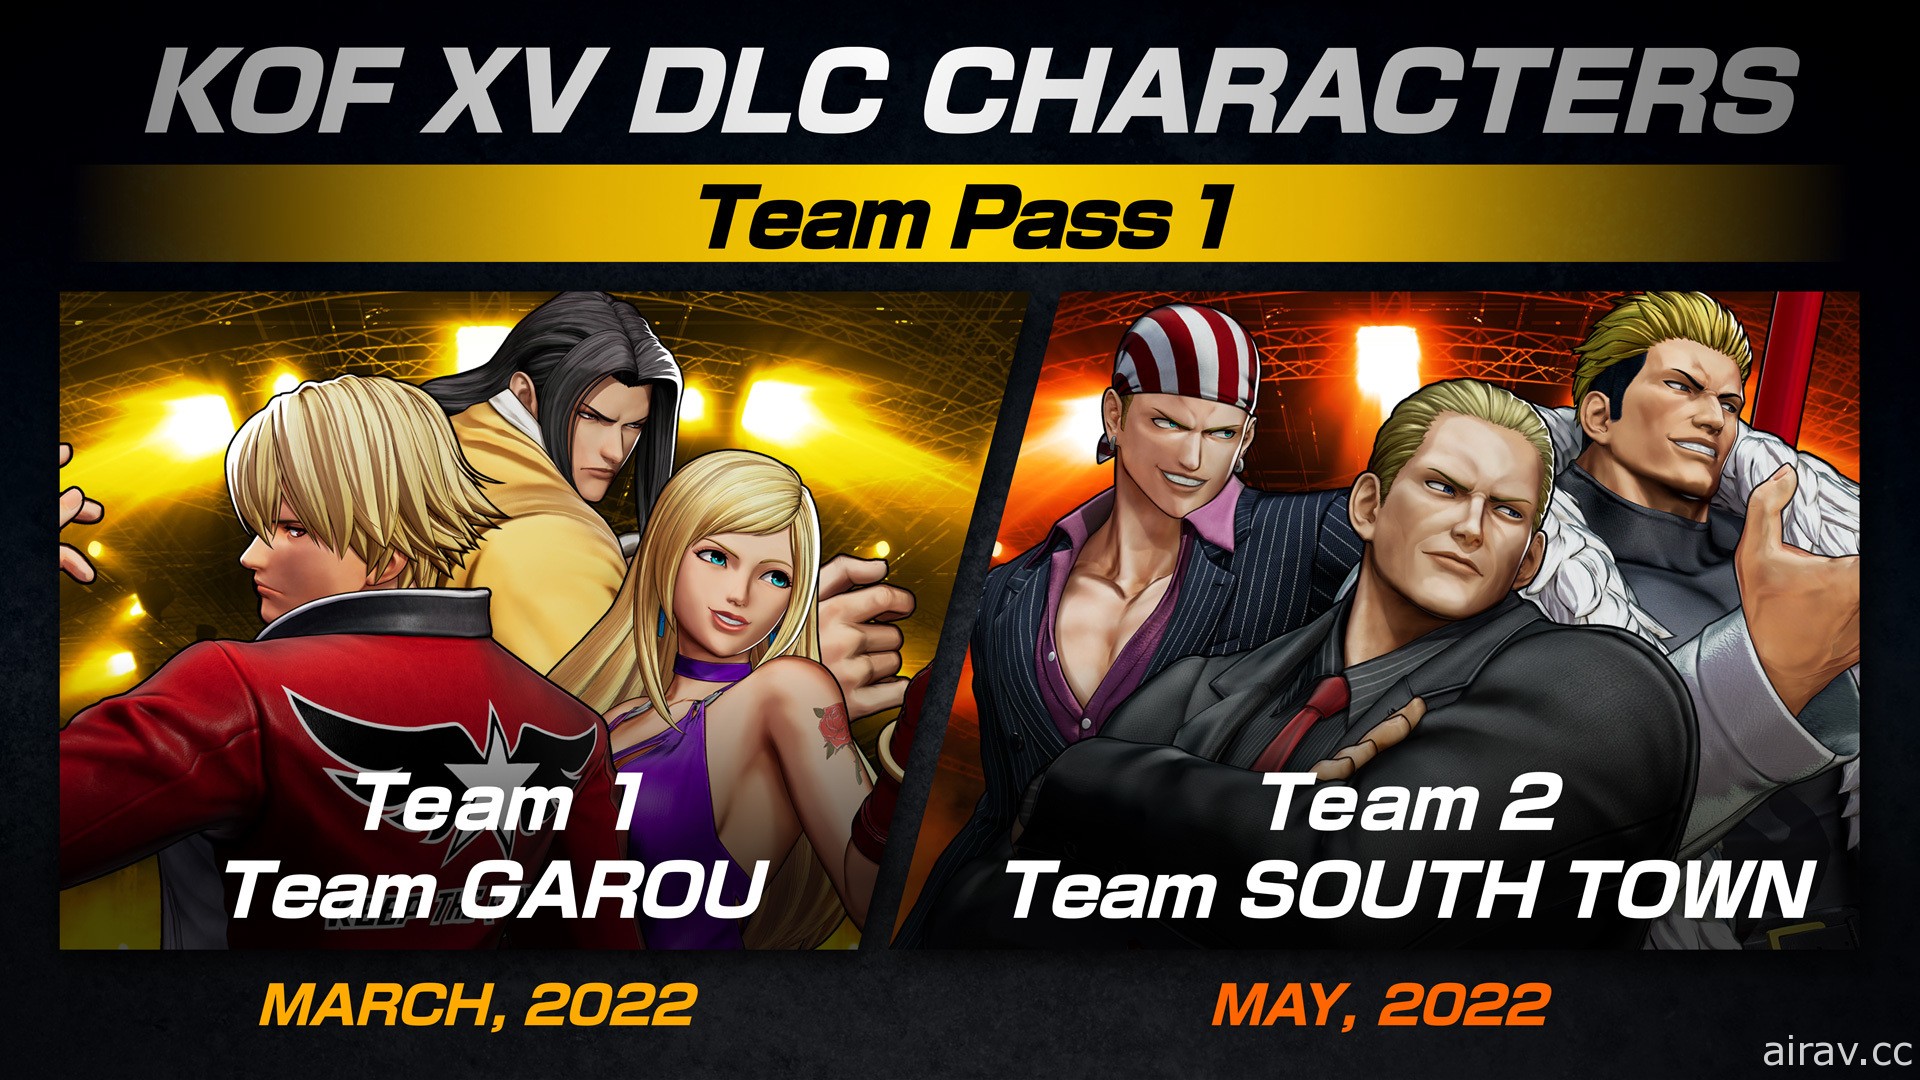 《拳皇 XV》DLC 參戰陣容將由「餓狼狼之印記隊」及「南鎮隊」打頭陣